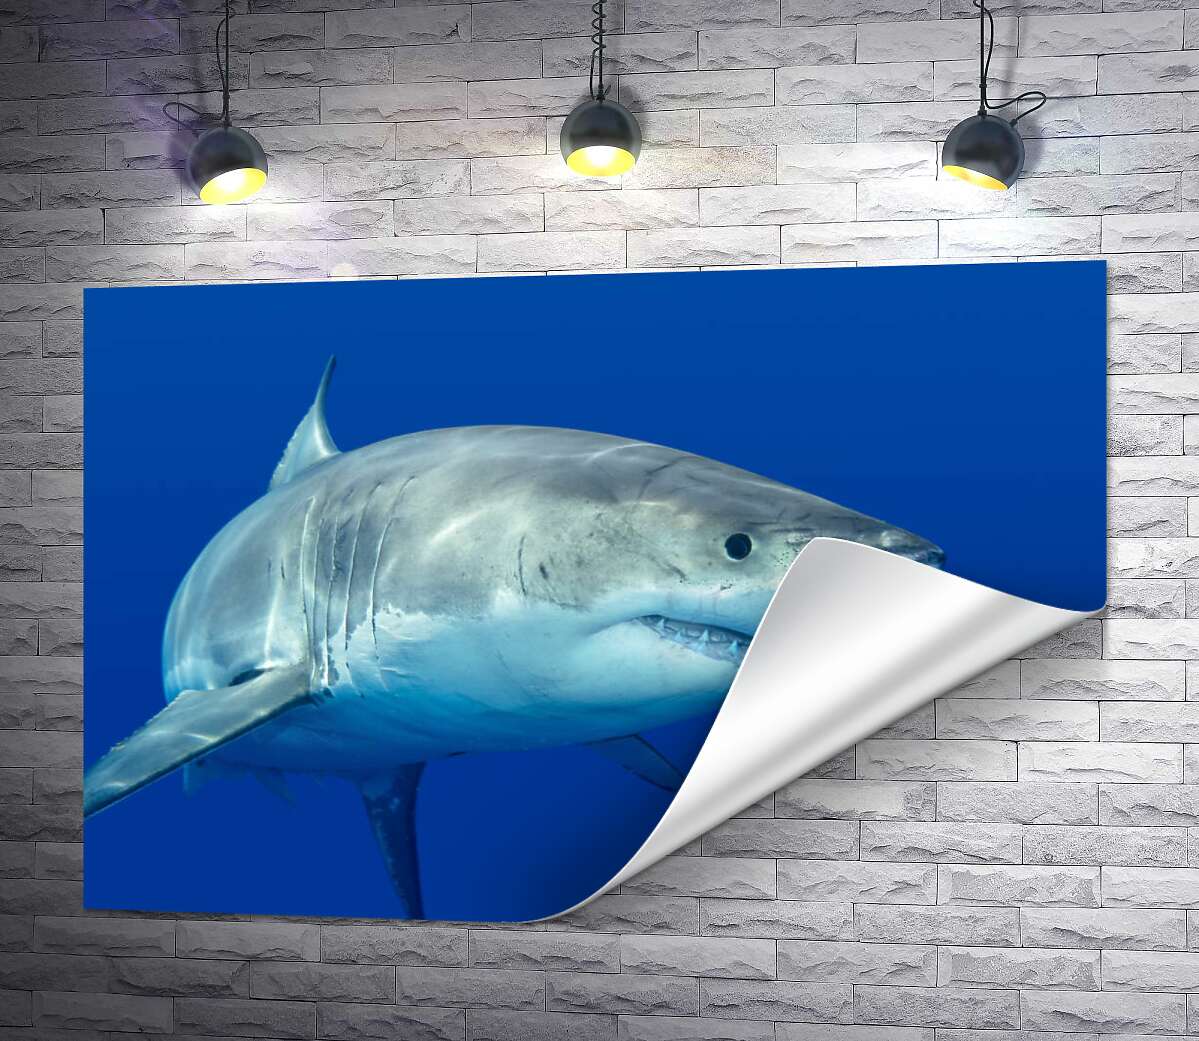 друк Біла акула плаває у блакиті води